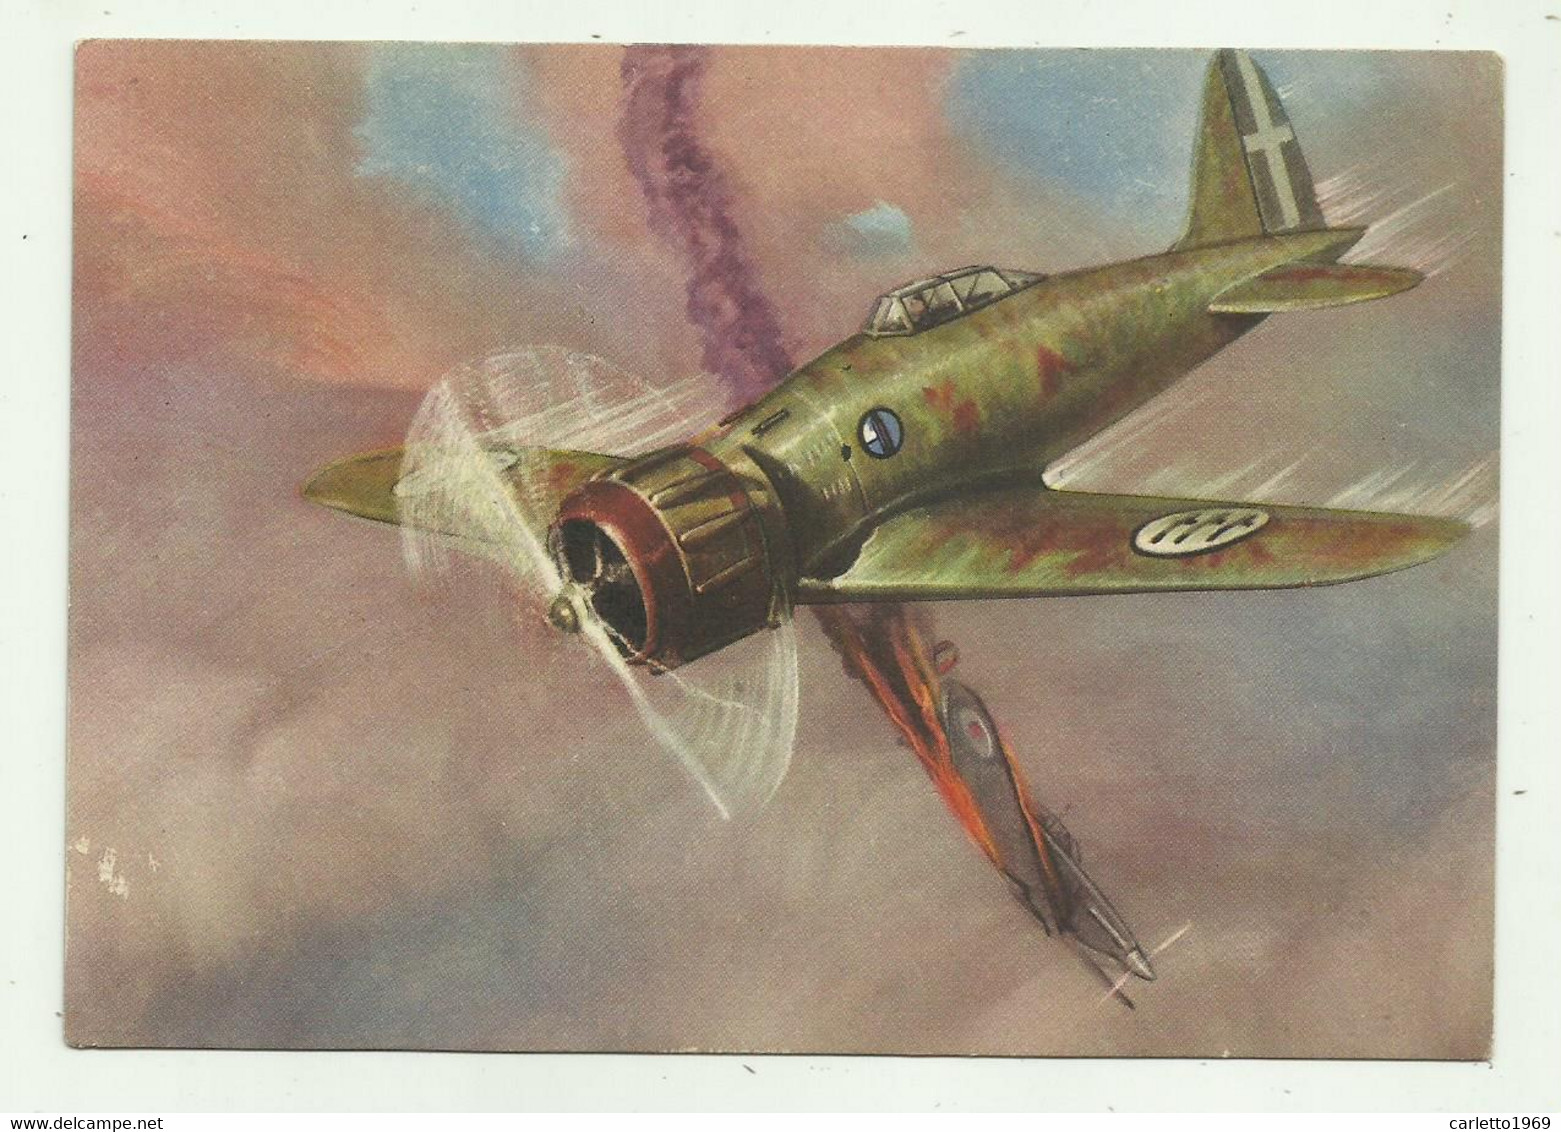 ARMA AERONAUTICA WW2  - NV FG - Weltkrieg 1939-45